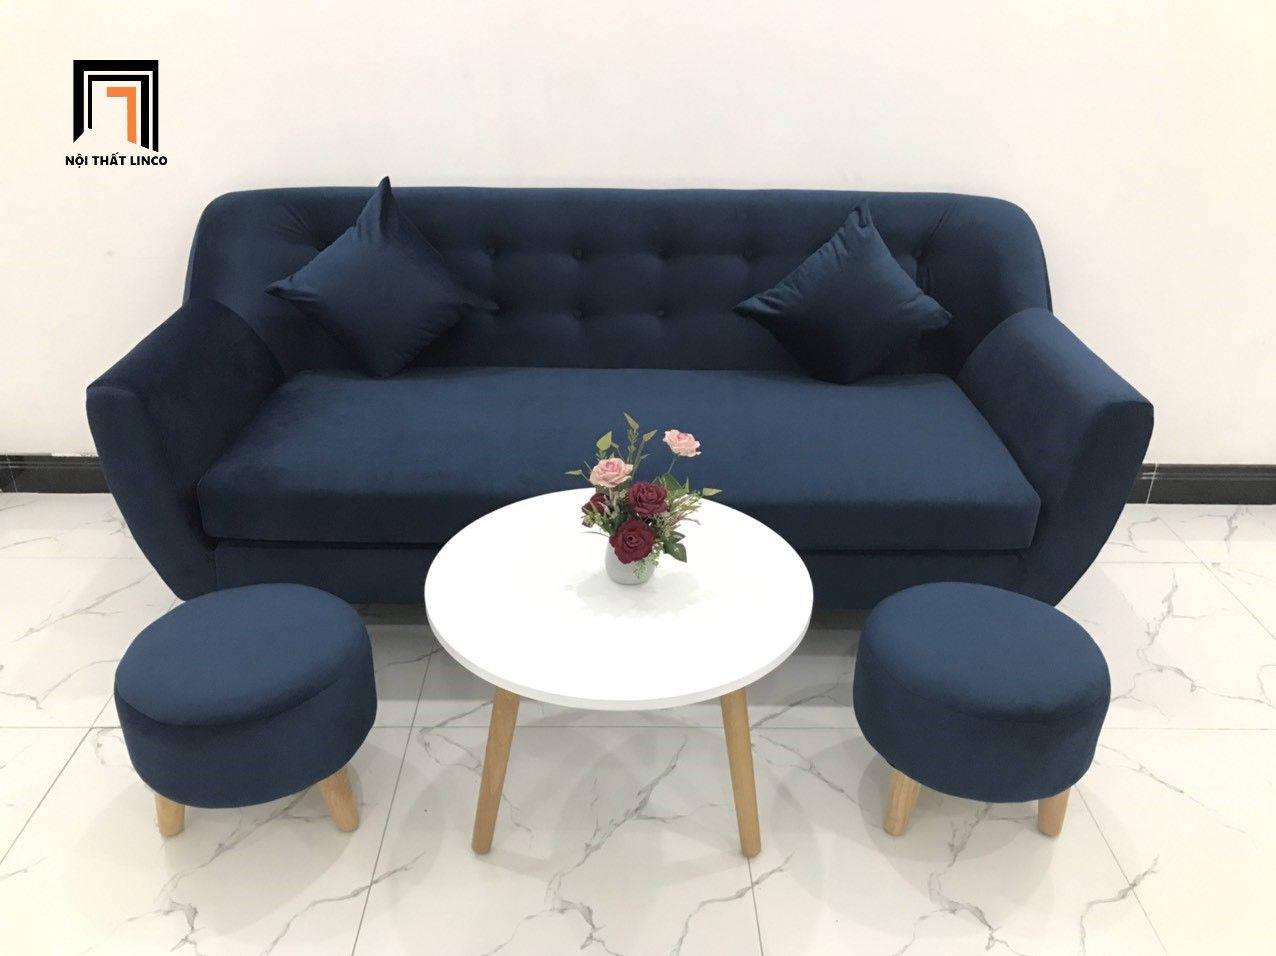  Bộ bàn ghế sofa băng BGN dài 1m9 xanh dương đậm vải nhung 